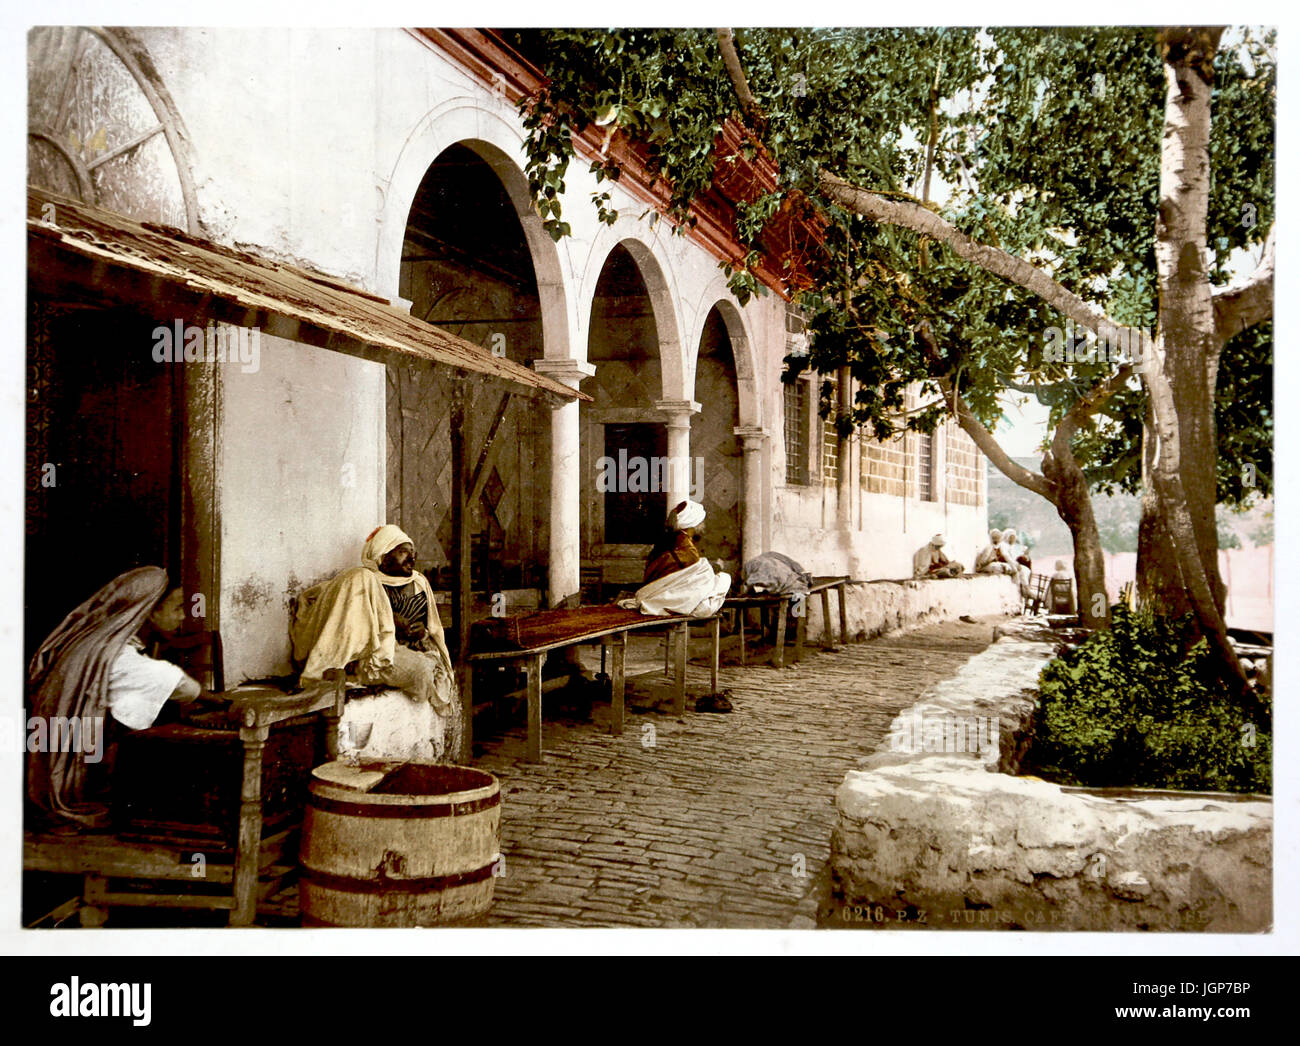 Blick auf Terrasse ein maurisches Café in Tunis Kasbah, Stammkunden im Jahre 1899. Photochrome Print. Teil eines Fotoalbums Farbe. Stockfoto